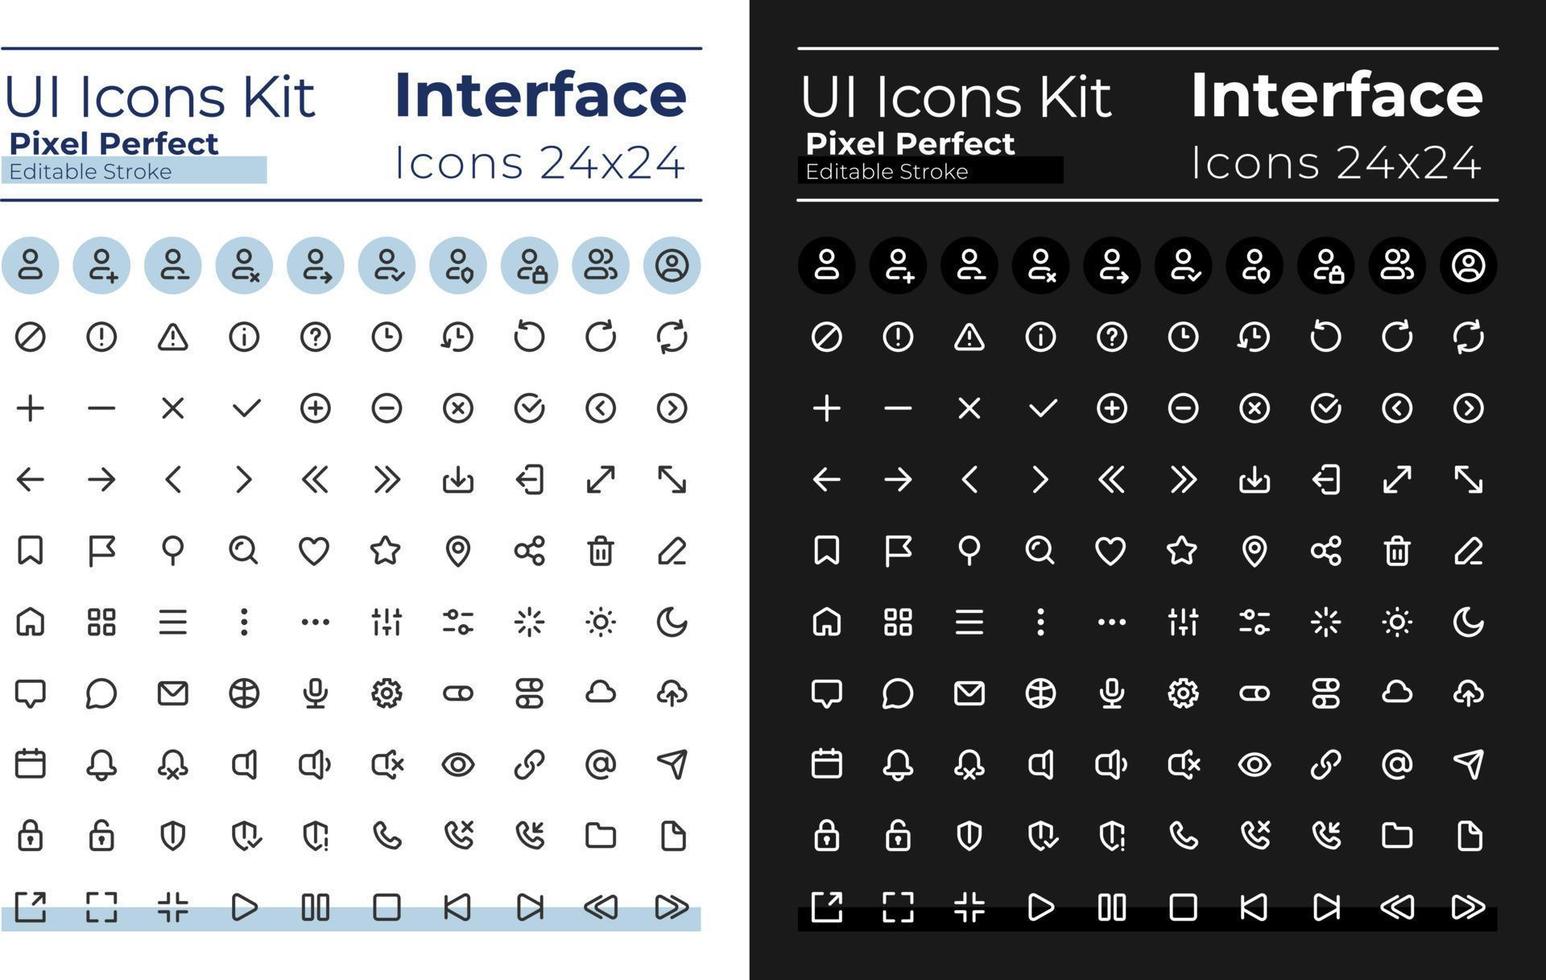 minimalista e semplice guardare pixel Perfetto lineare ui icone impostato per scuro, leggero modalità. schema isolato utente interfaccia elementi per notte, giorno temi. modificabile ictus vettore